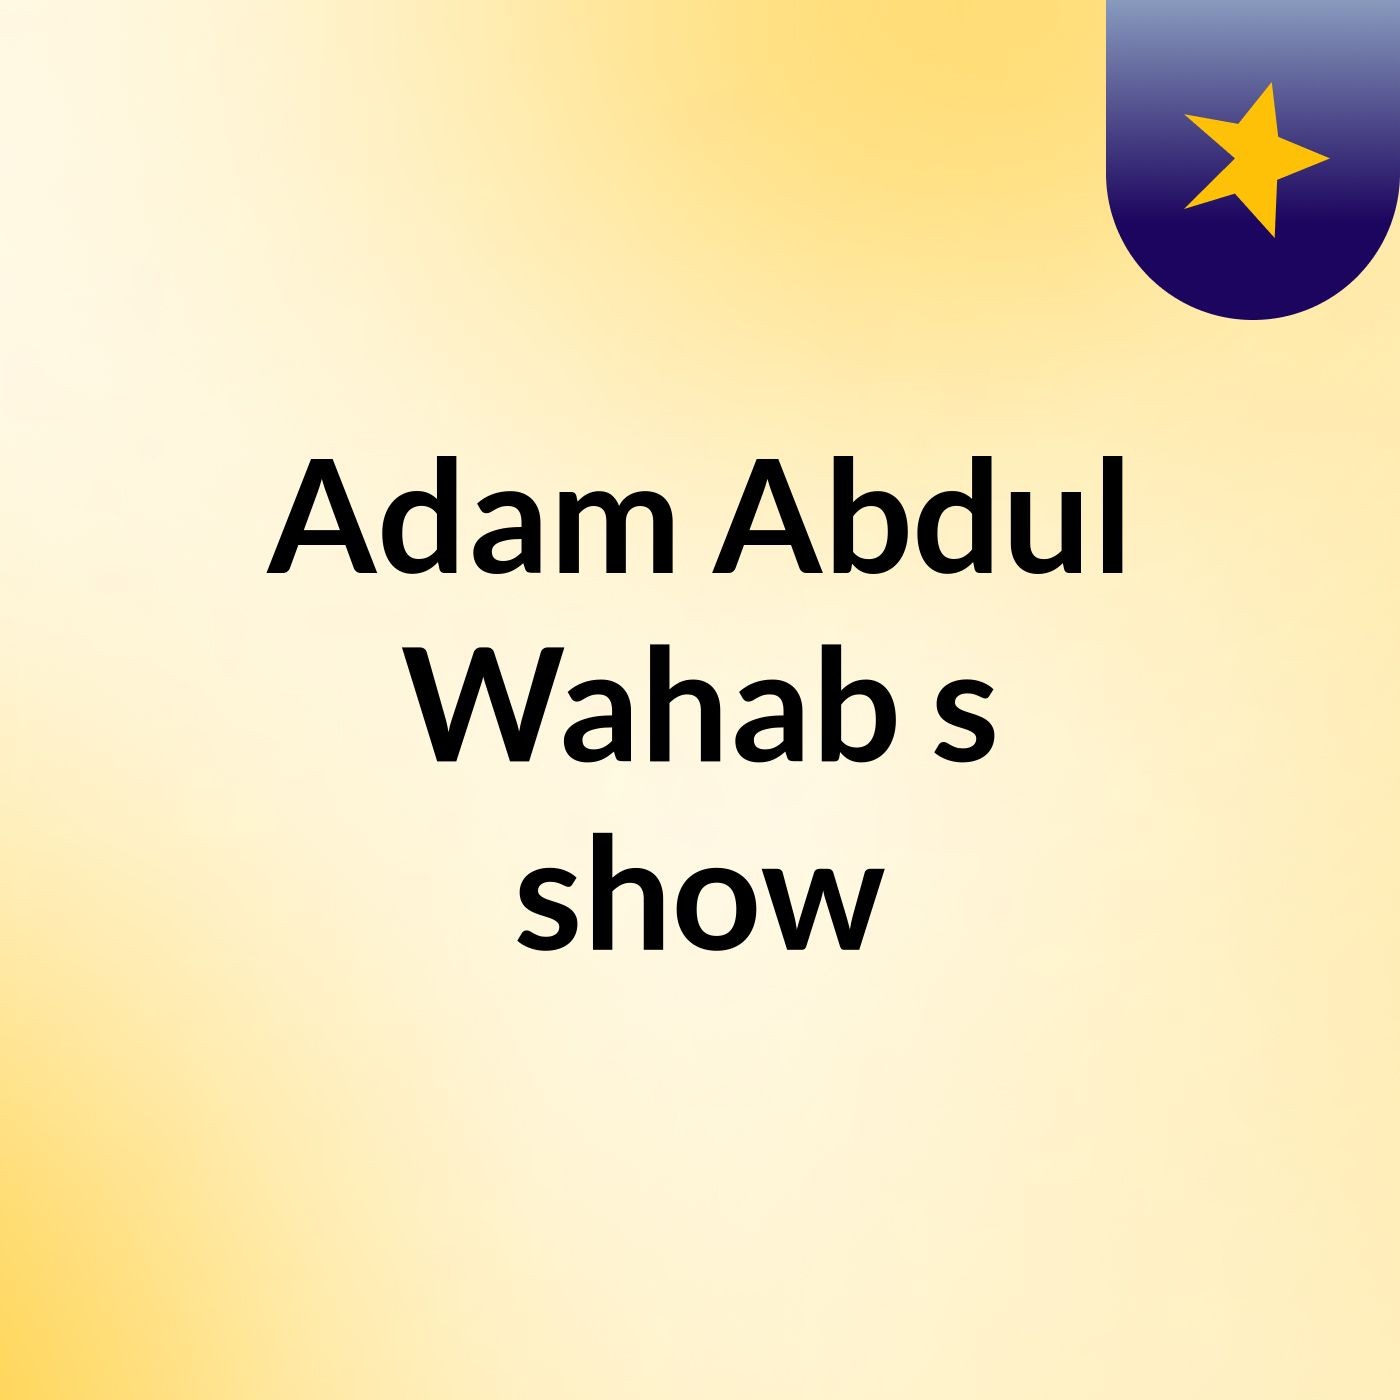 Episode 4 - Adam Abdul Wahab's show